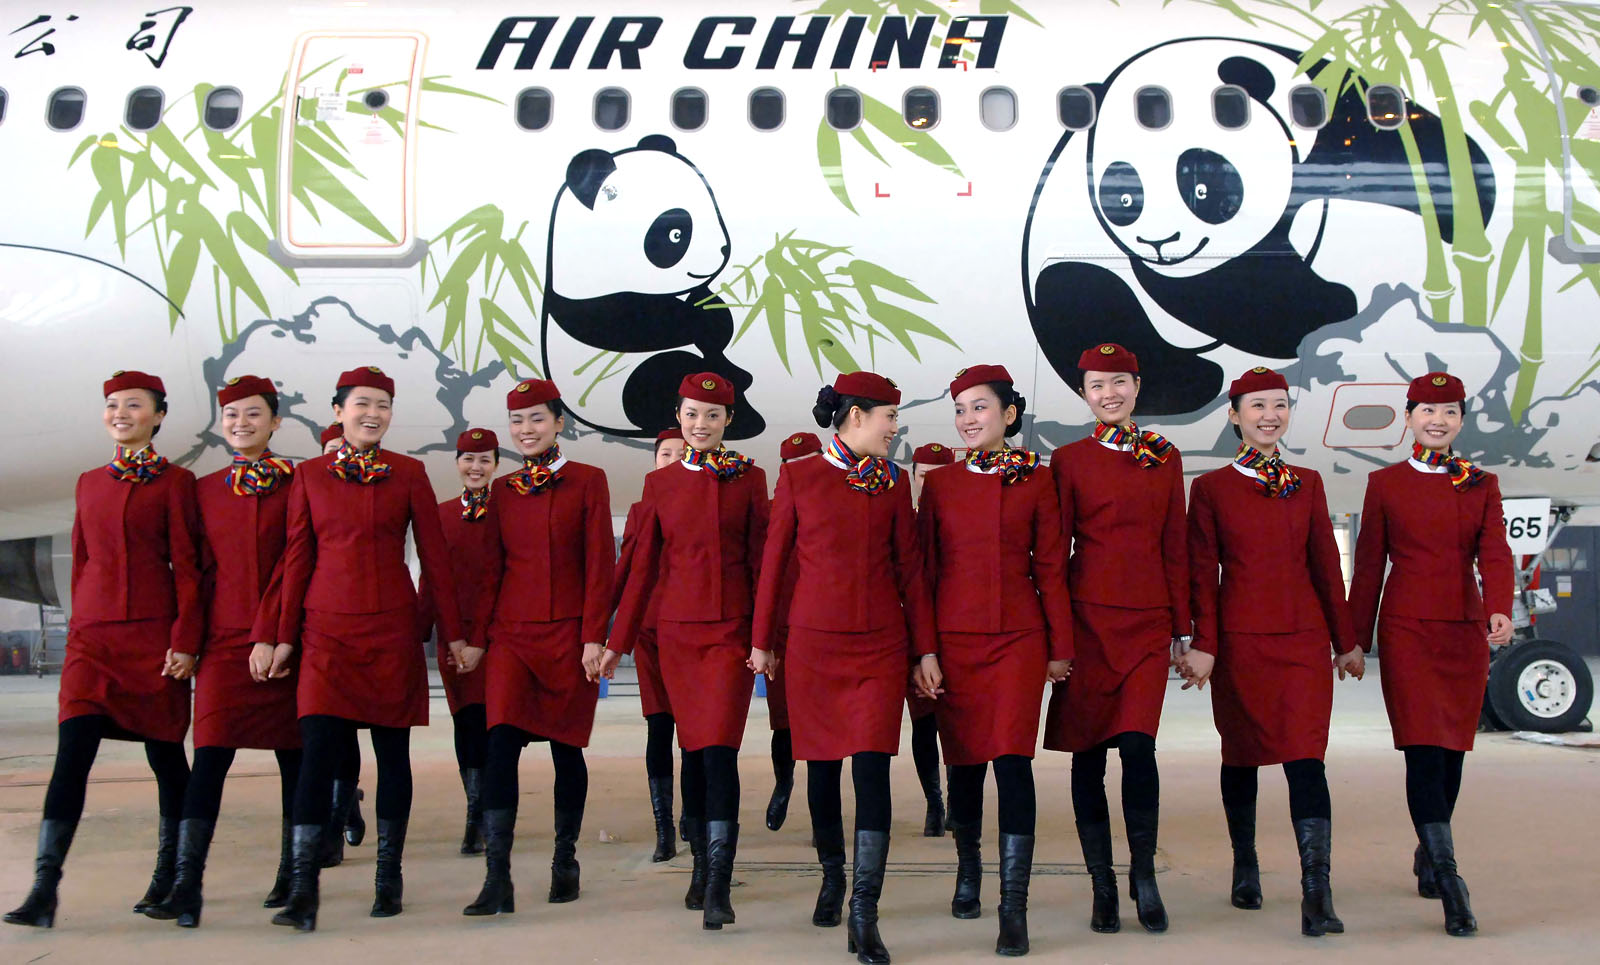 Air China khuyến mãi giá vé đến Mỹ hấp dẫn